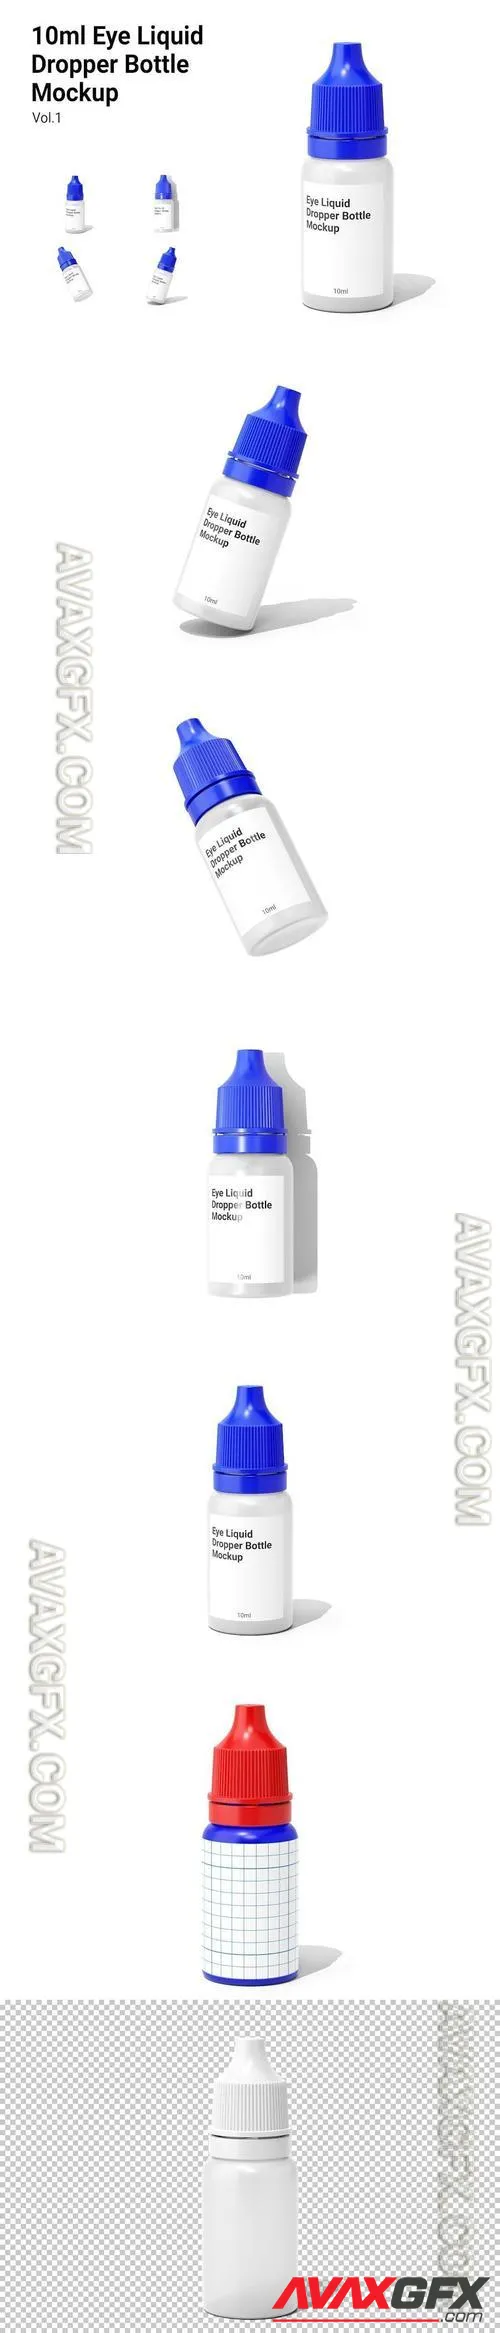 Eye Liquid Dropper Bottle Mockup Vol.1